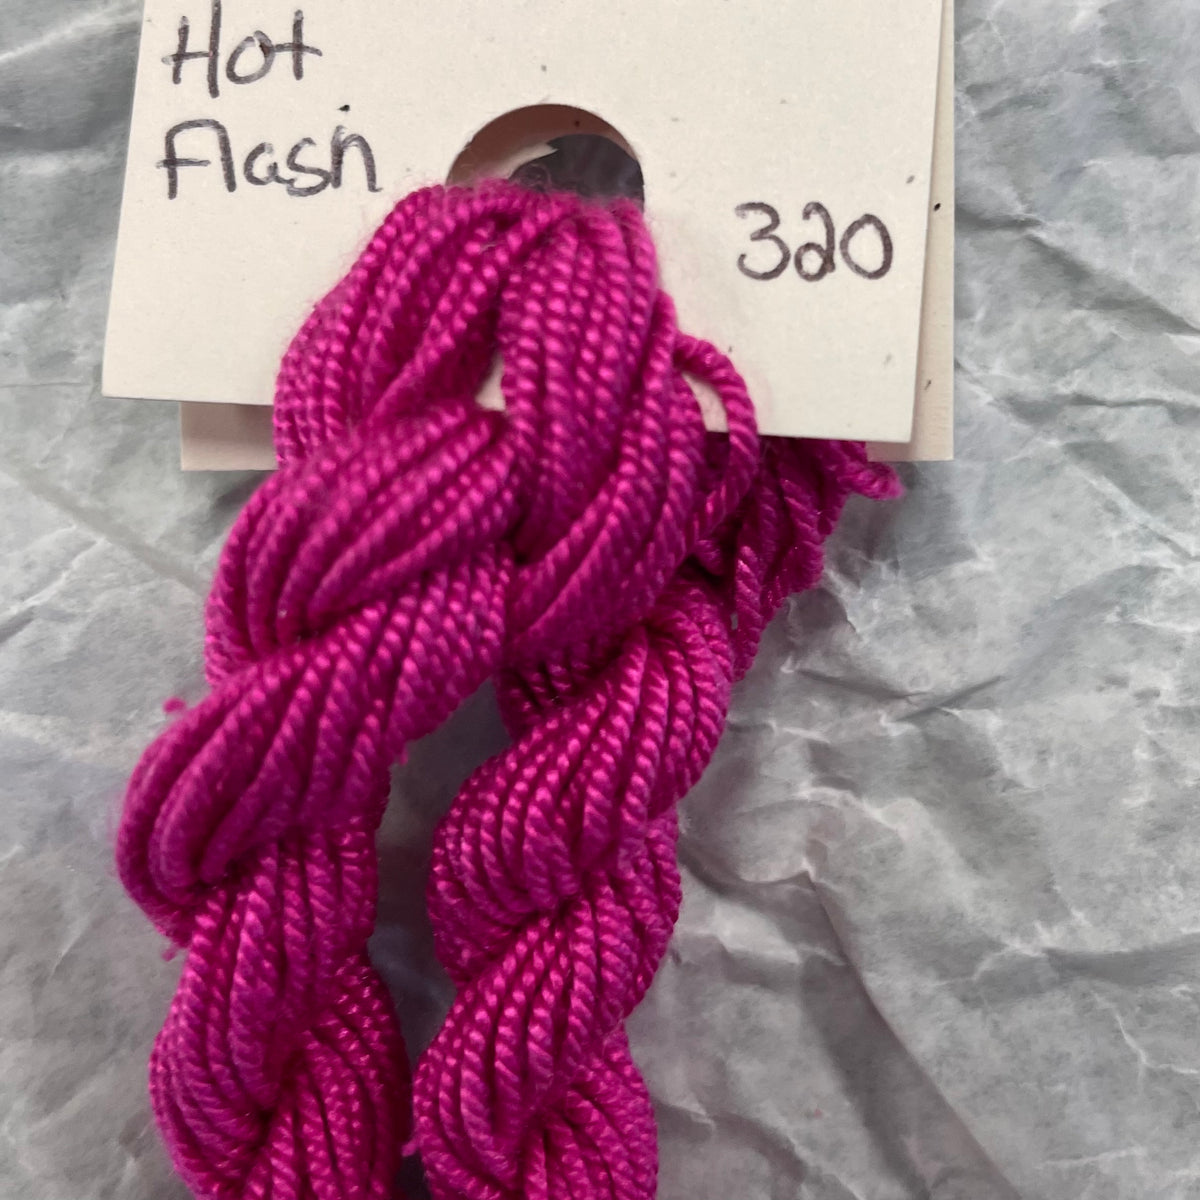 320 Hot Flash - Shinju Silk Thread Solid